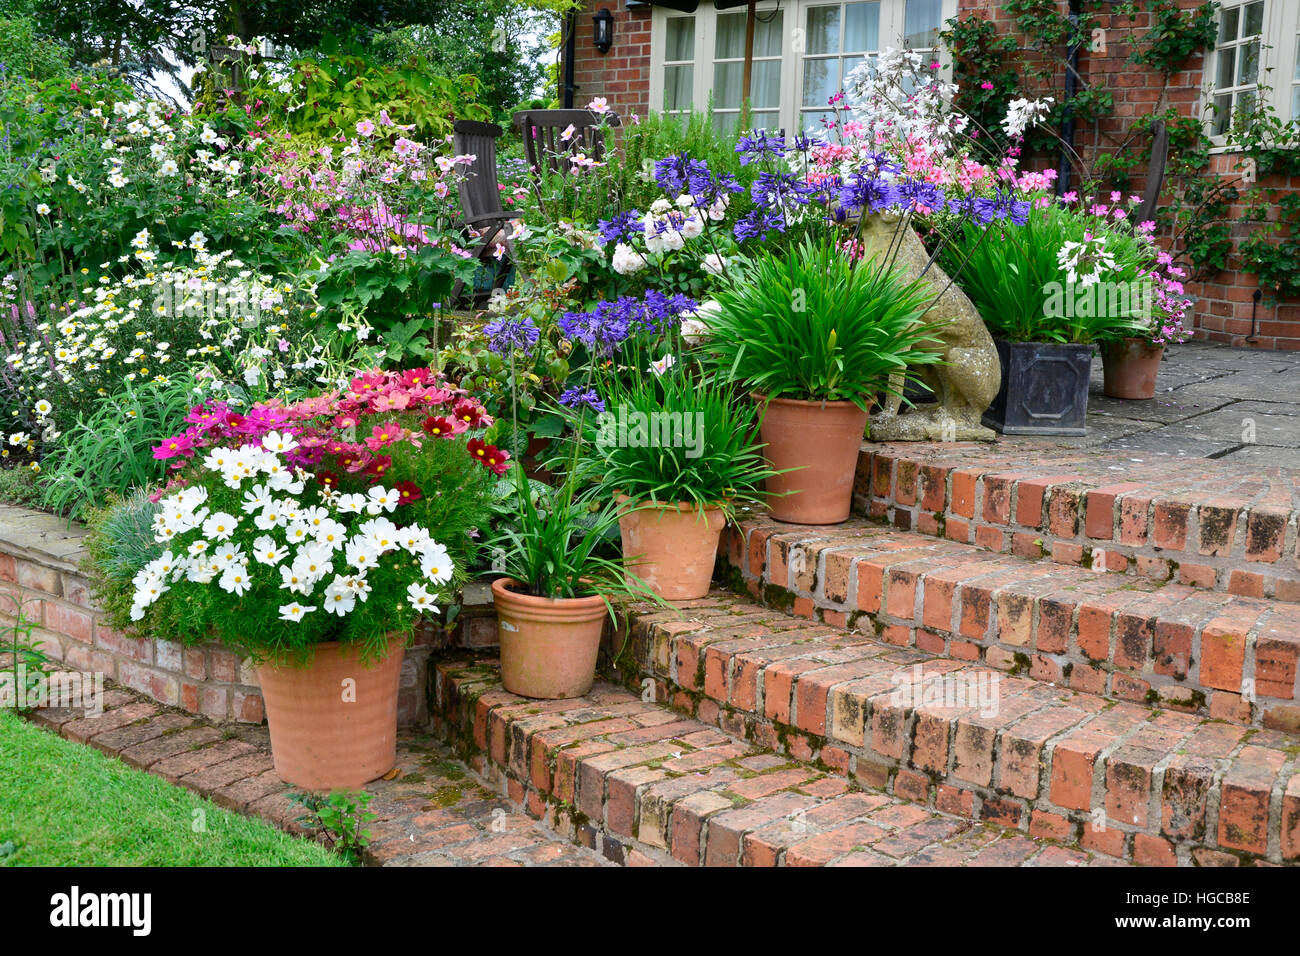 Colorata terrazza giardino con fiori misti letti e piantate contenitori rendendo molto attractice visualizzato nella parte anteriore di una casa di campagna Foto Stock